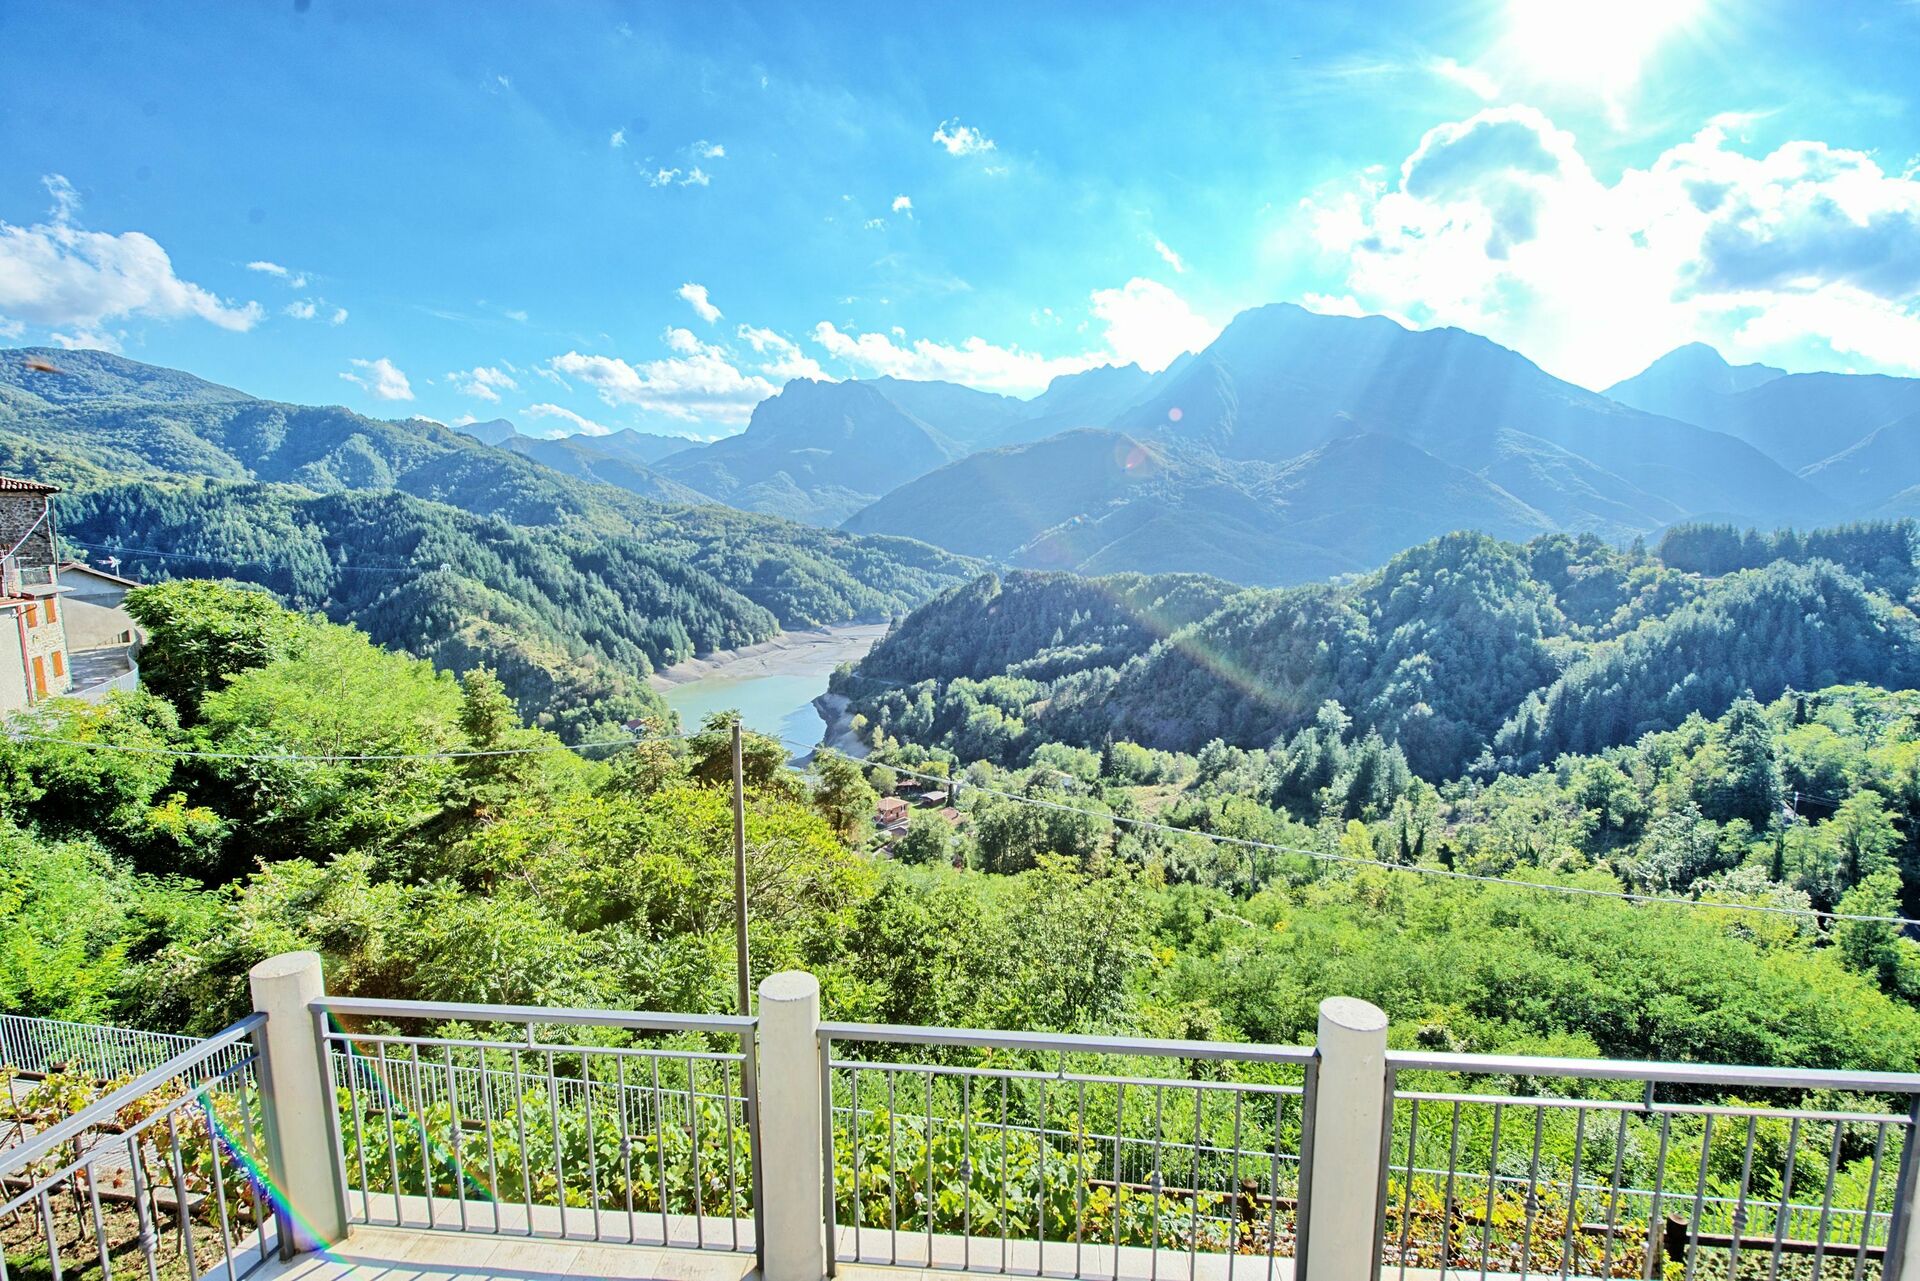 Les meilleures randonnées en Toscane : découvrez les secrets de cette région magnifique